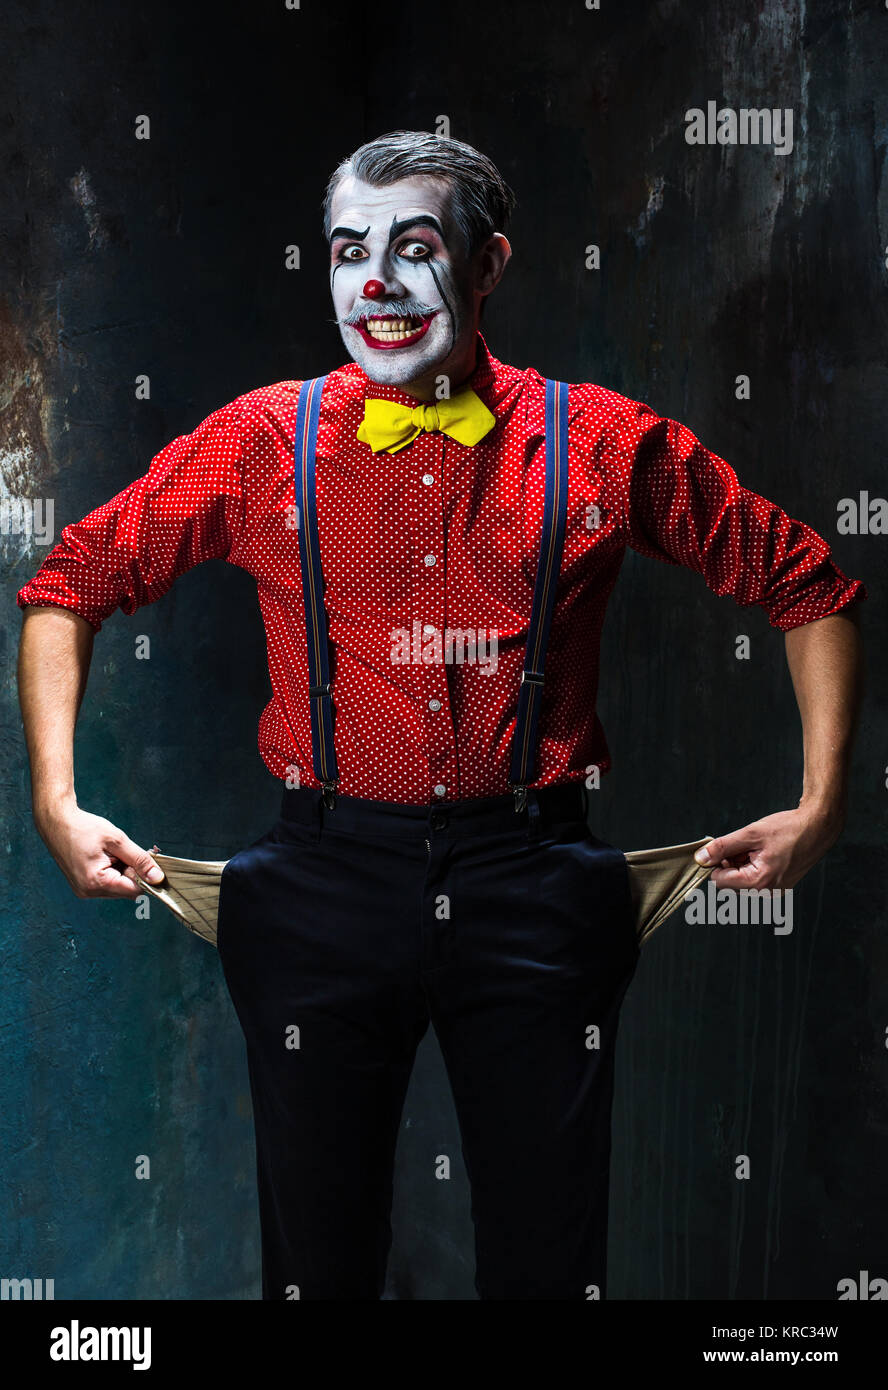 Terrible et clown Halloween theme : Crazy red clown dans une chemise avec  bretelles sur fond sombre Photo Stock - Alamy